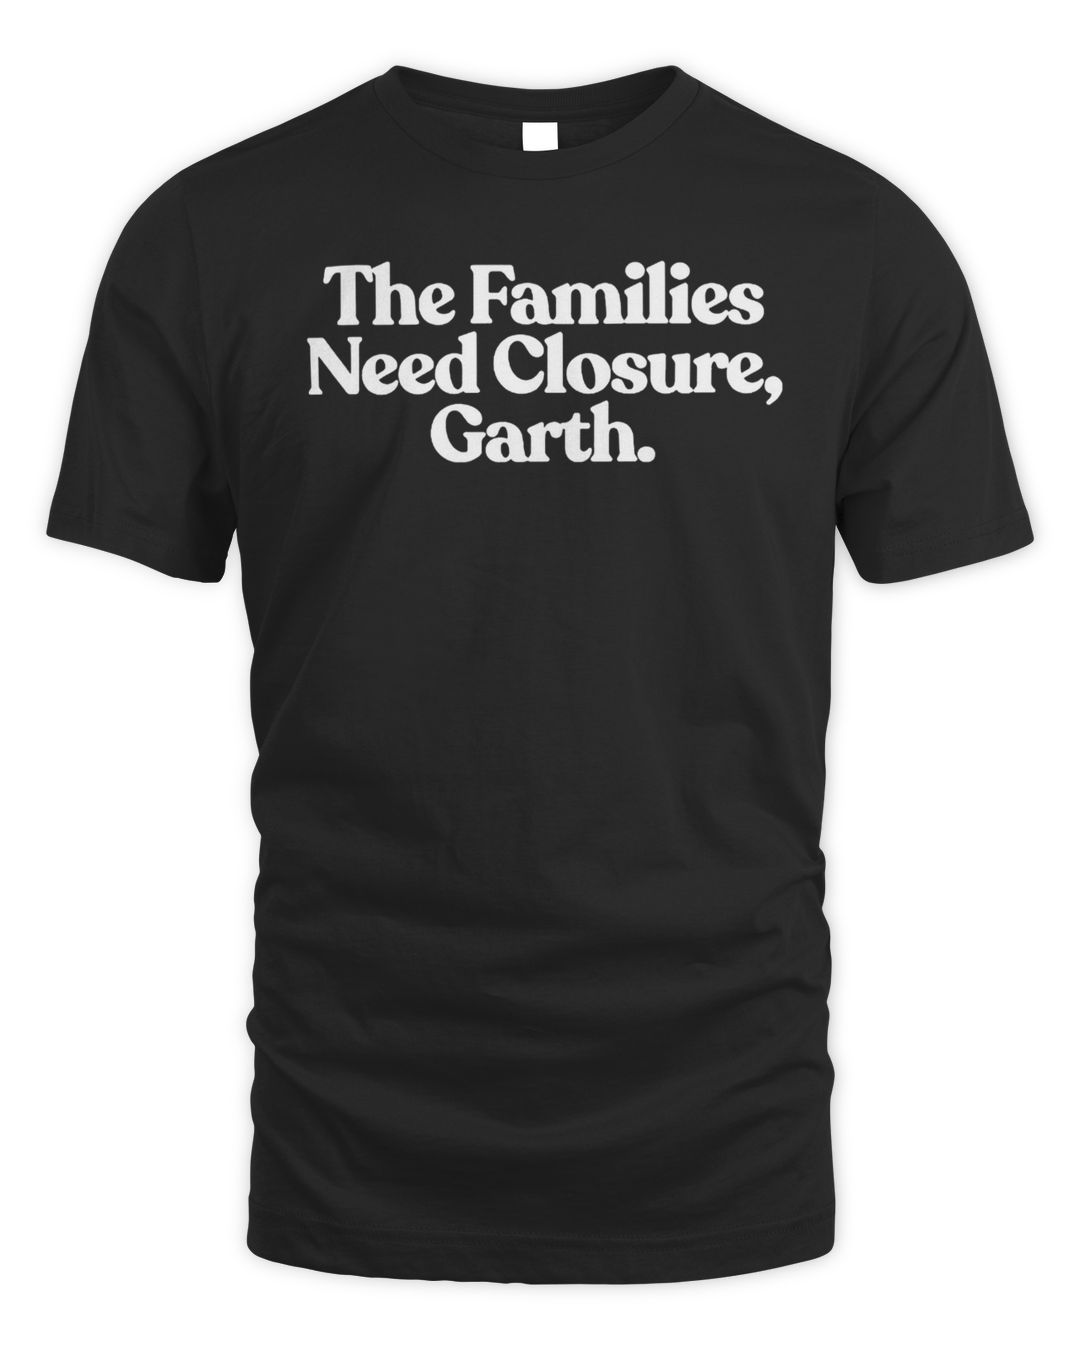 Ymh Merch the Families Need Closure, Garth Shirt